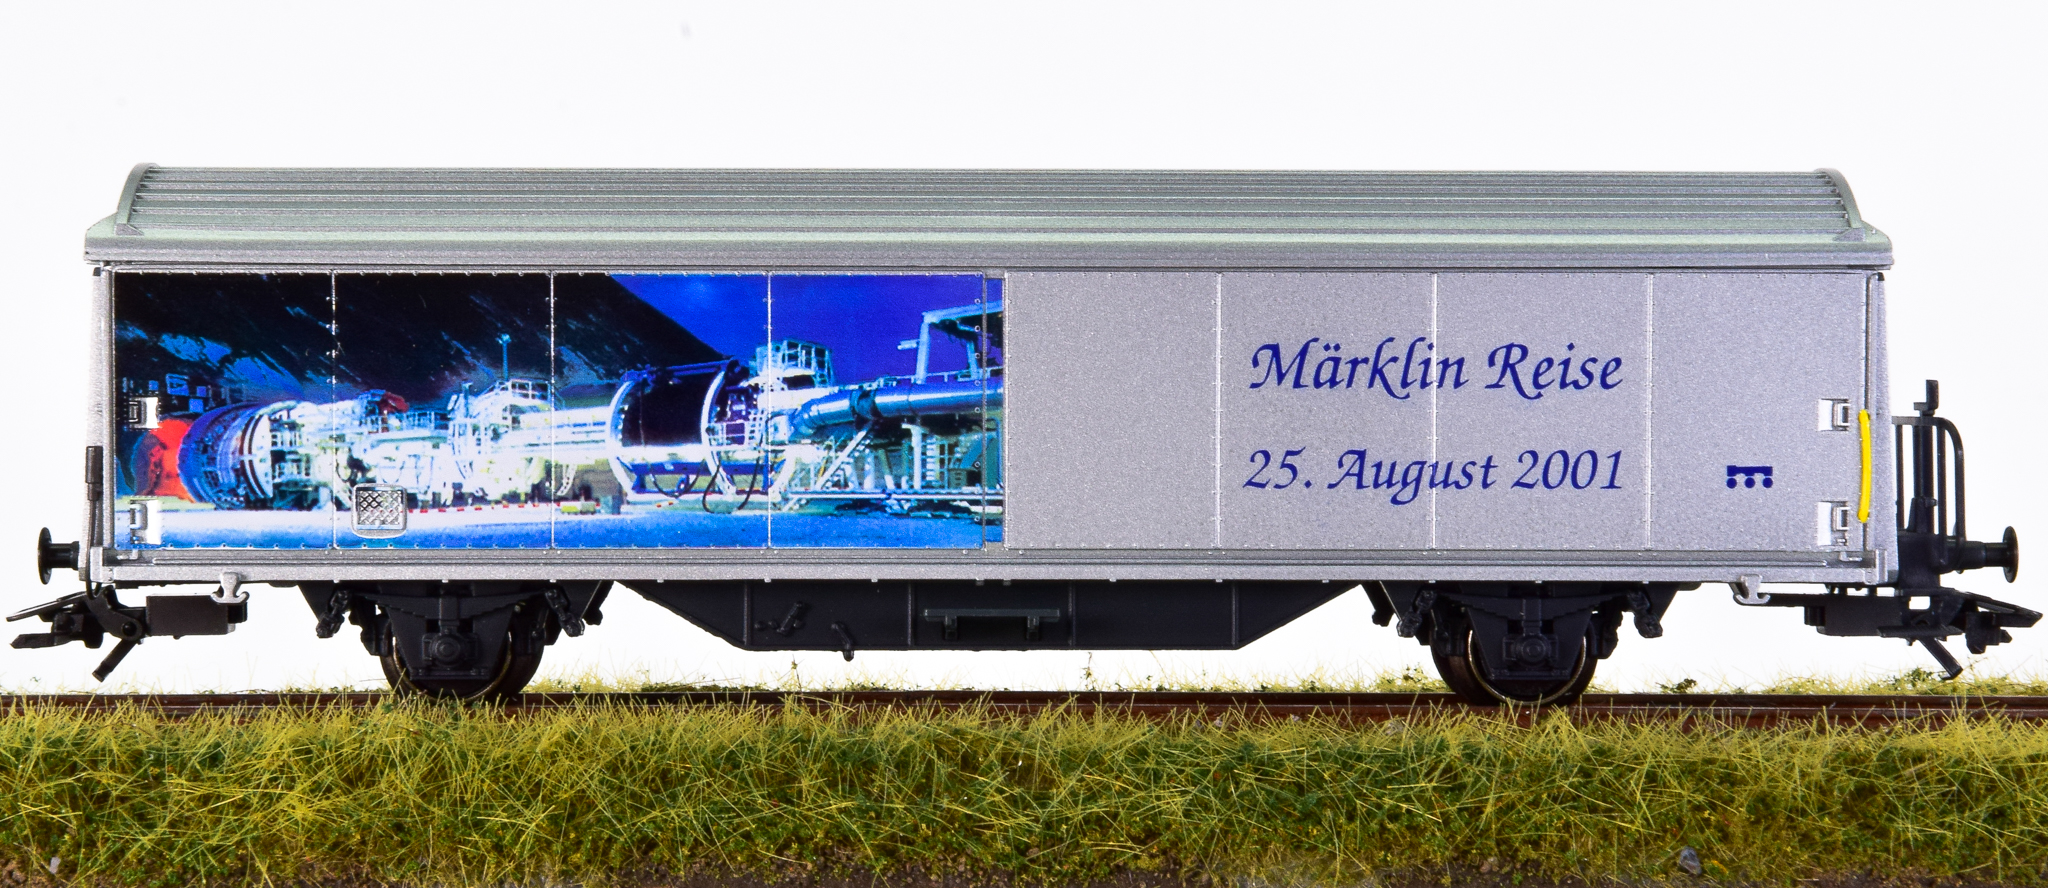 GebrauchteModellbahn | Märklin 4735.956 – Schiebewandwagen Märklin Reise  25. August 2001 | Erste Klasse aus 2. Hand